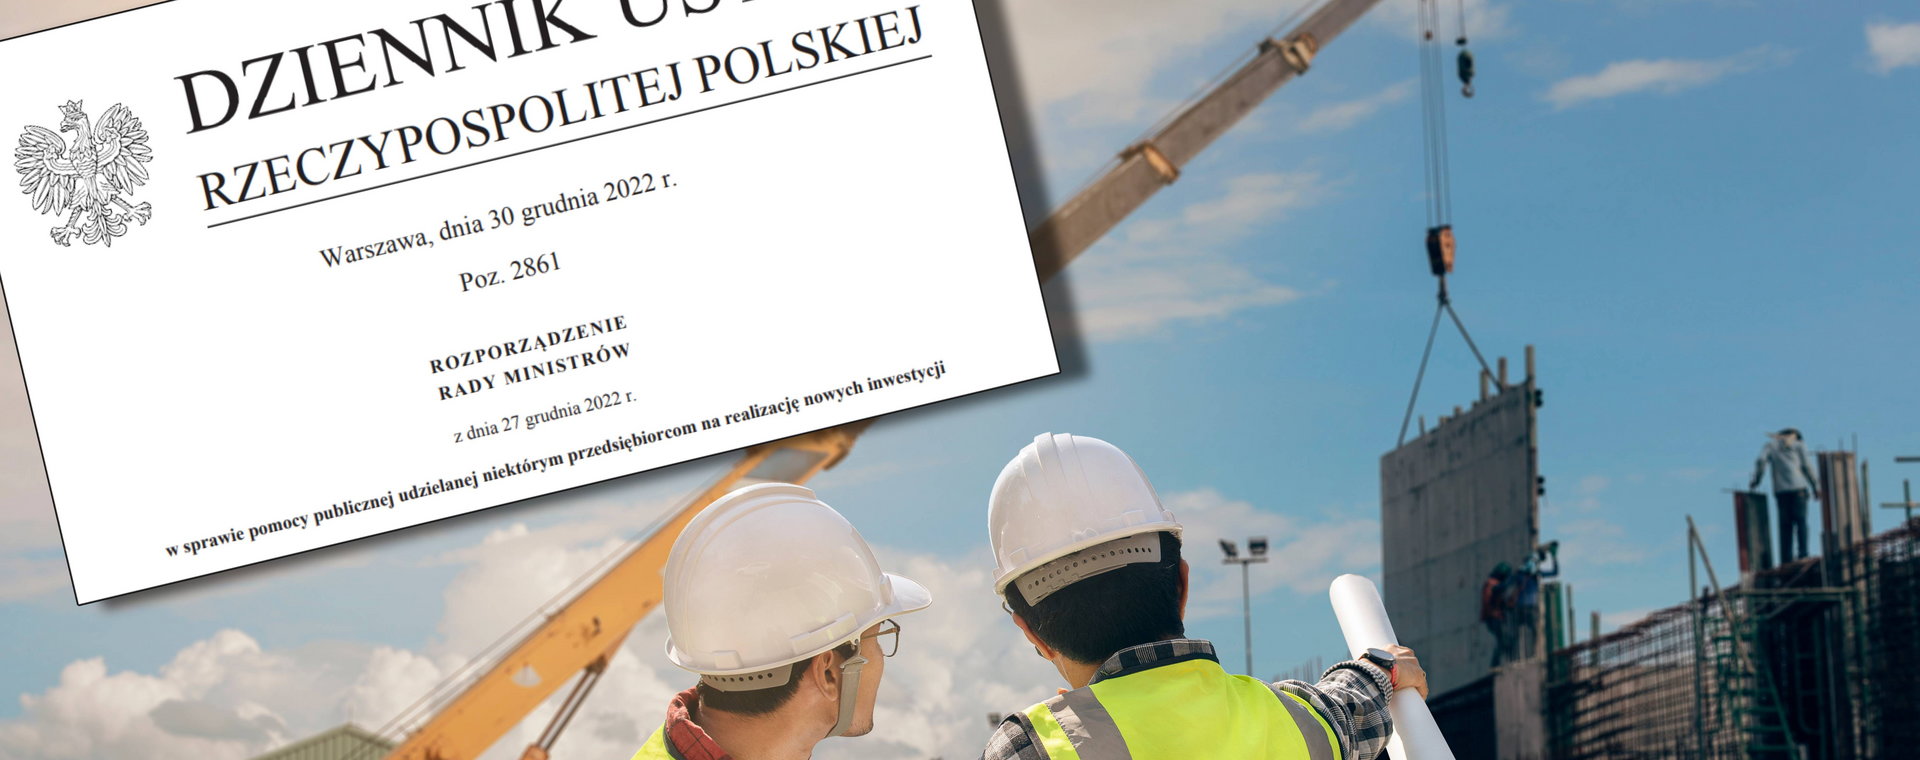 W Polskiej Strefie Inwestycji ze zwolnienia podatkowego korzysta budowa zakładu od zera (greenfield), a także rozbudowa (brownfield)